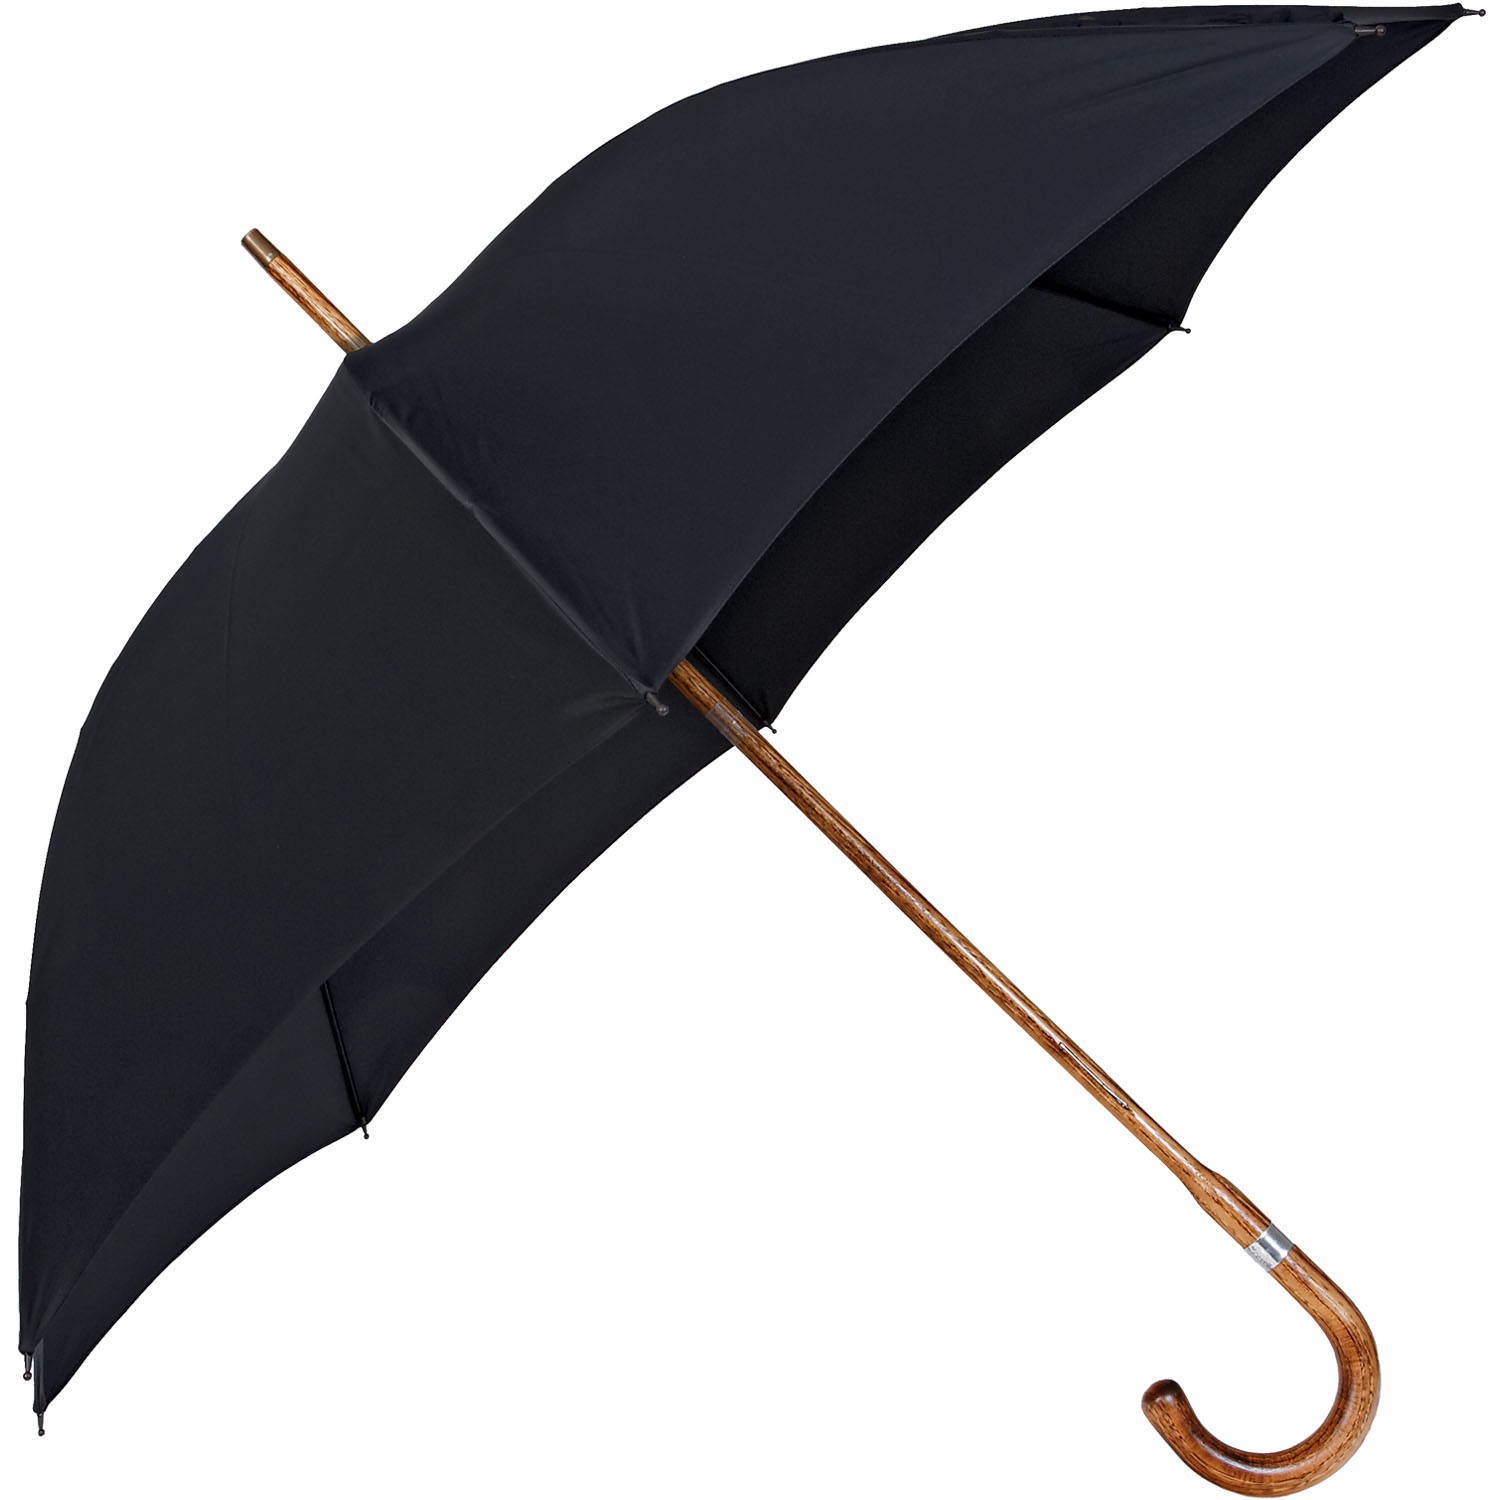 Brigg - Hickory Wood | European Umbrellas